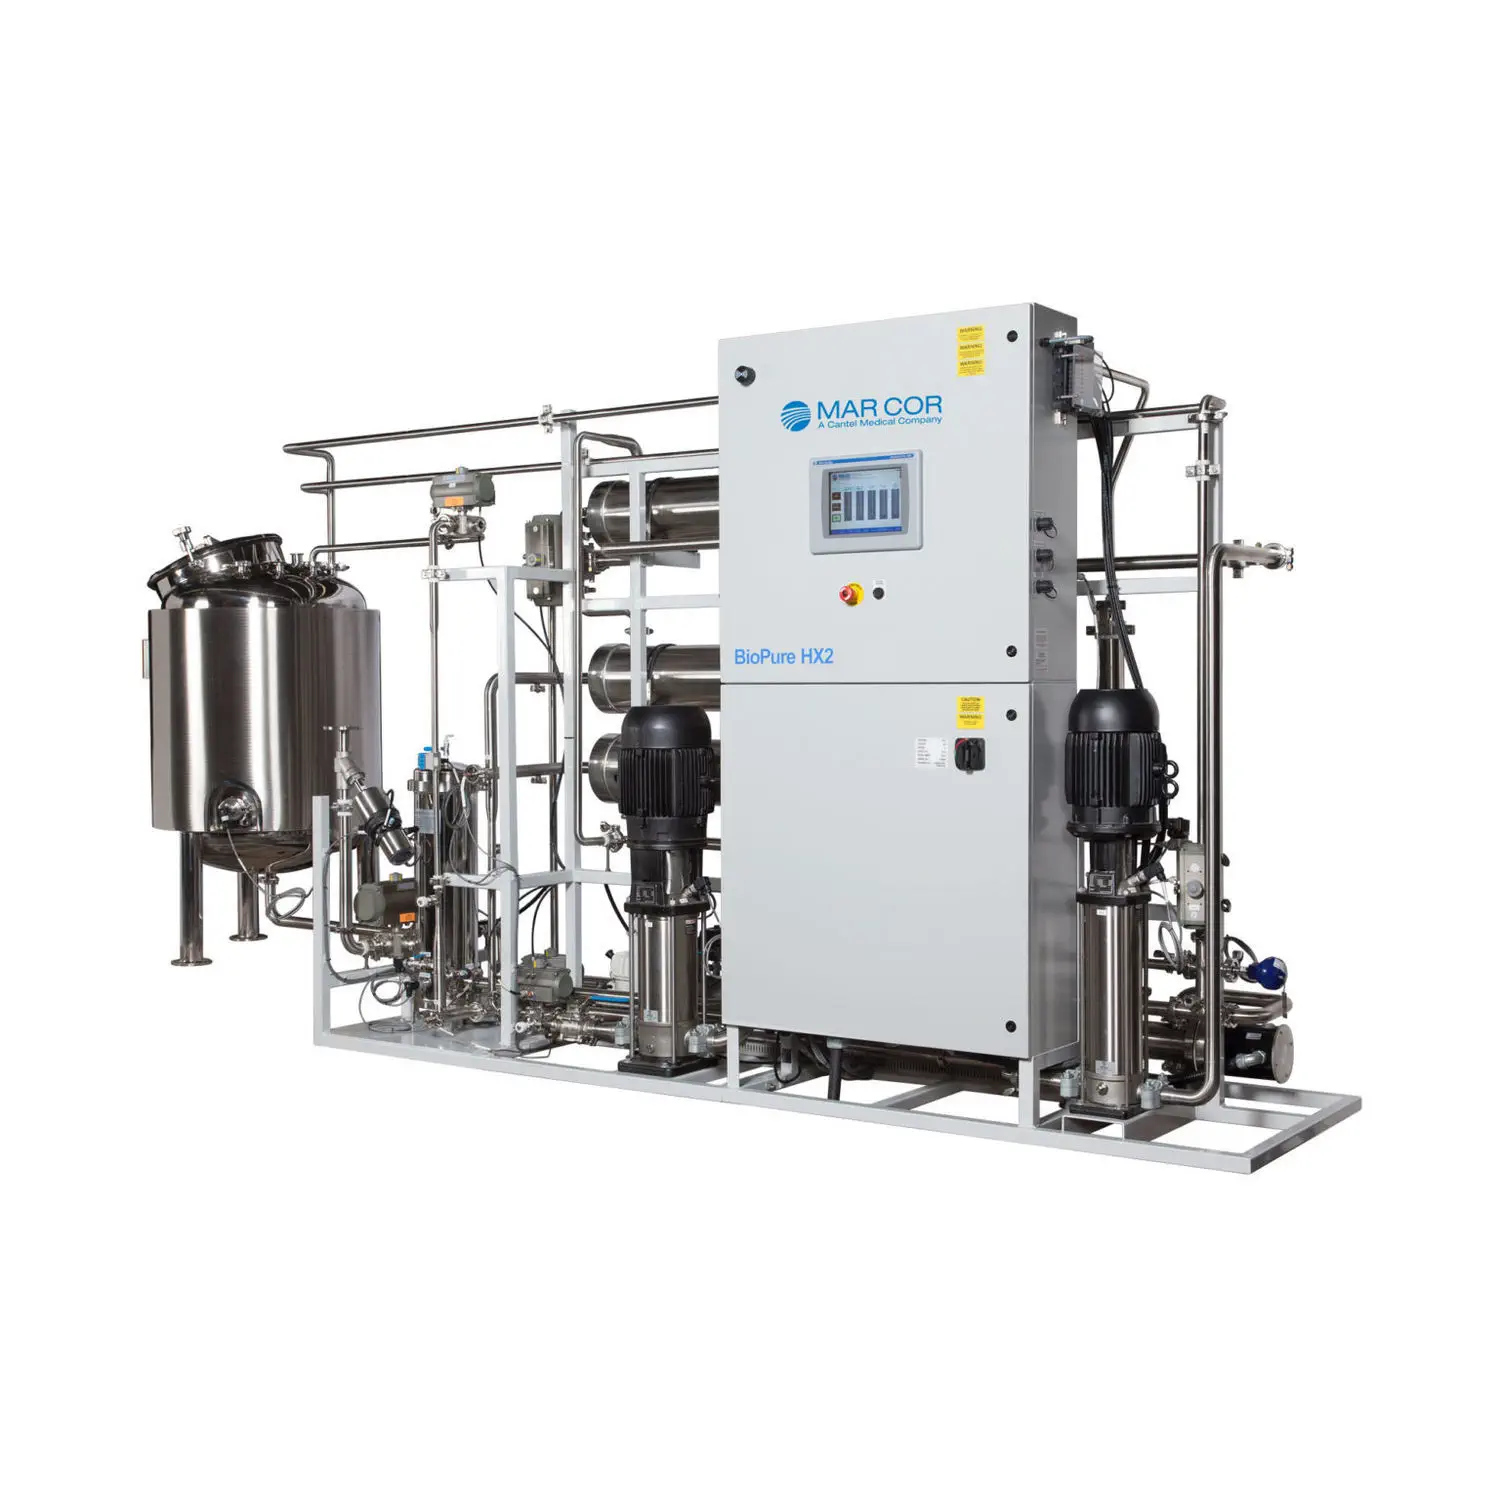 เครื่องผลิตน้ำบริสุทธิ์สำหรับฟอกเลือด รองรับเครื่องไตเทียม 30 เครื่อง  Hemodialysis water treatment plant BioPure HX2  Mar Cor